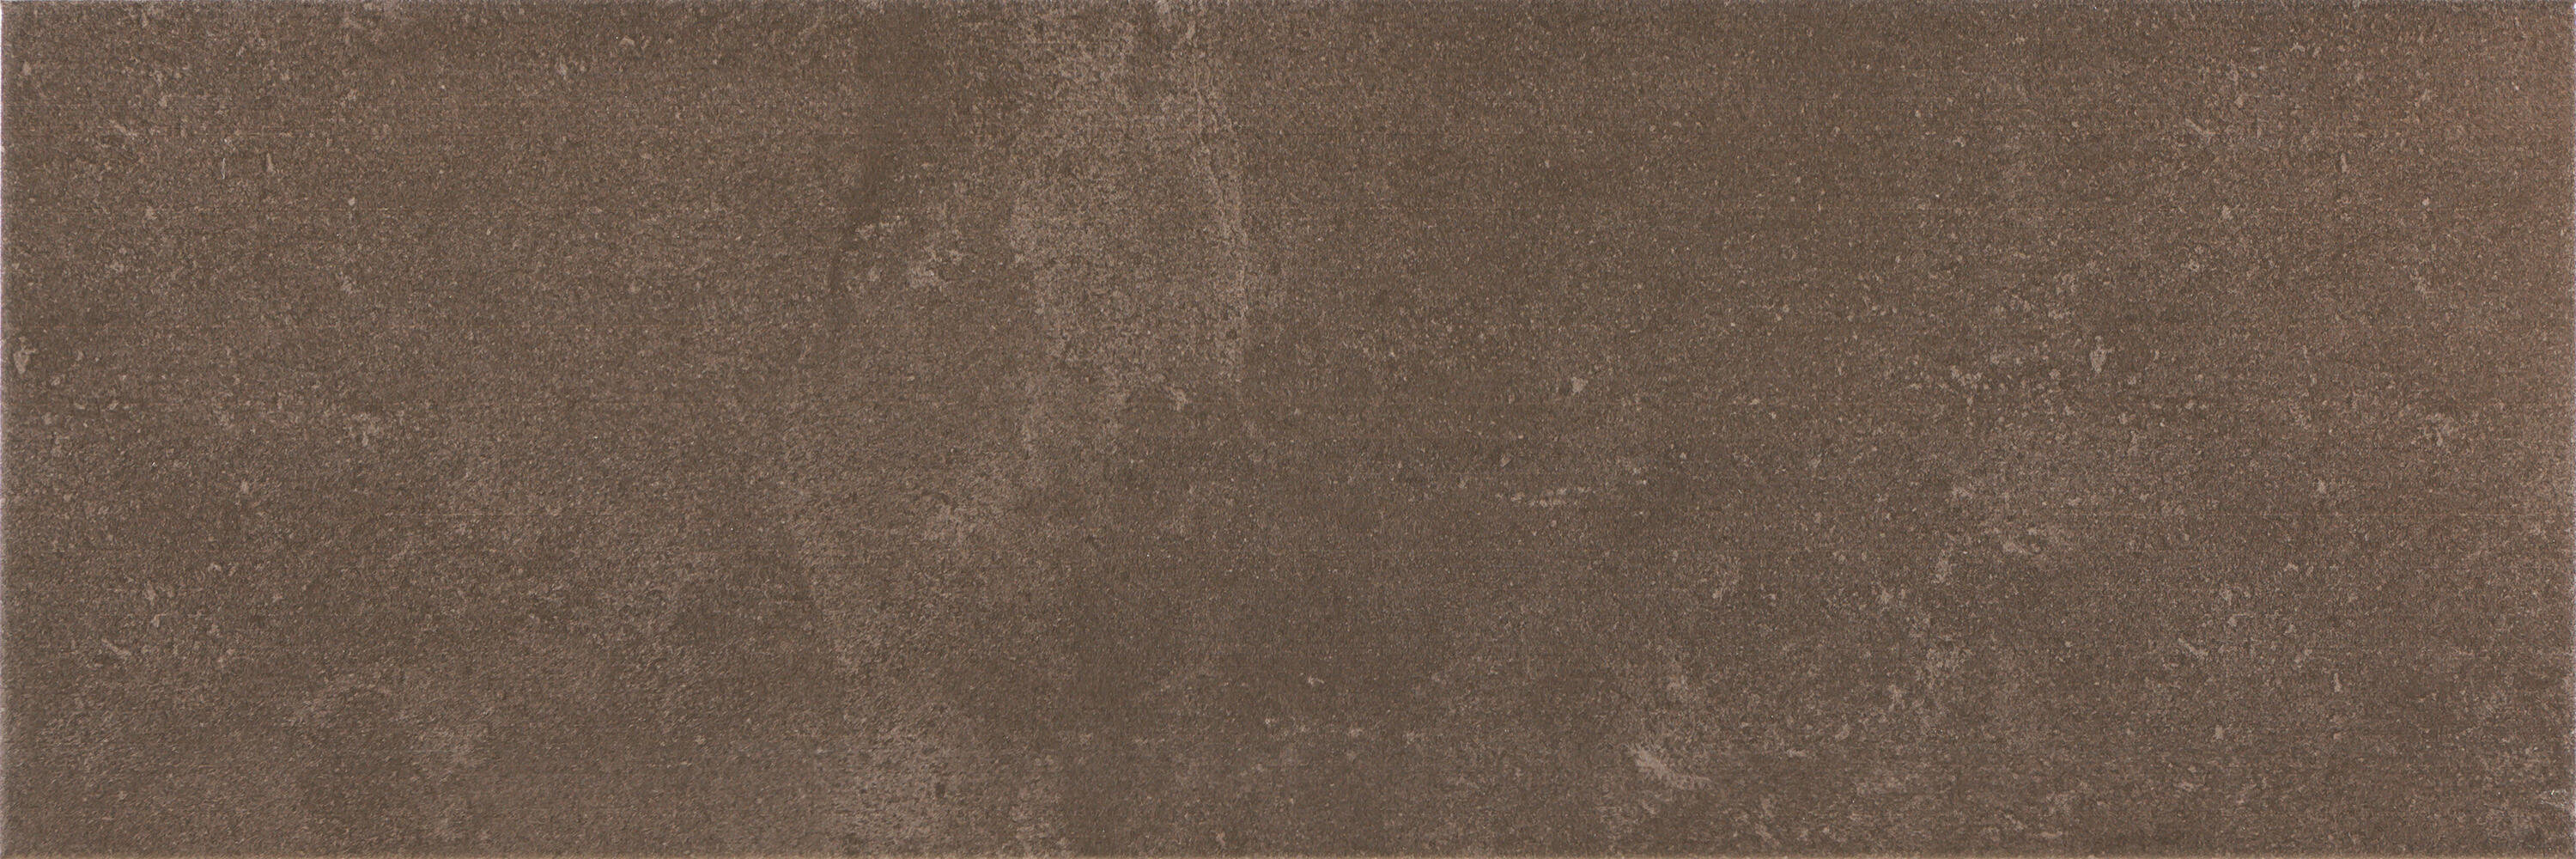 Azulejo cerámico laval efecto cemento marrón 20x60 cm